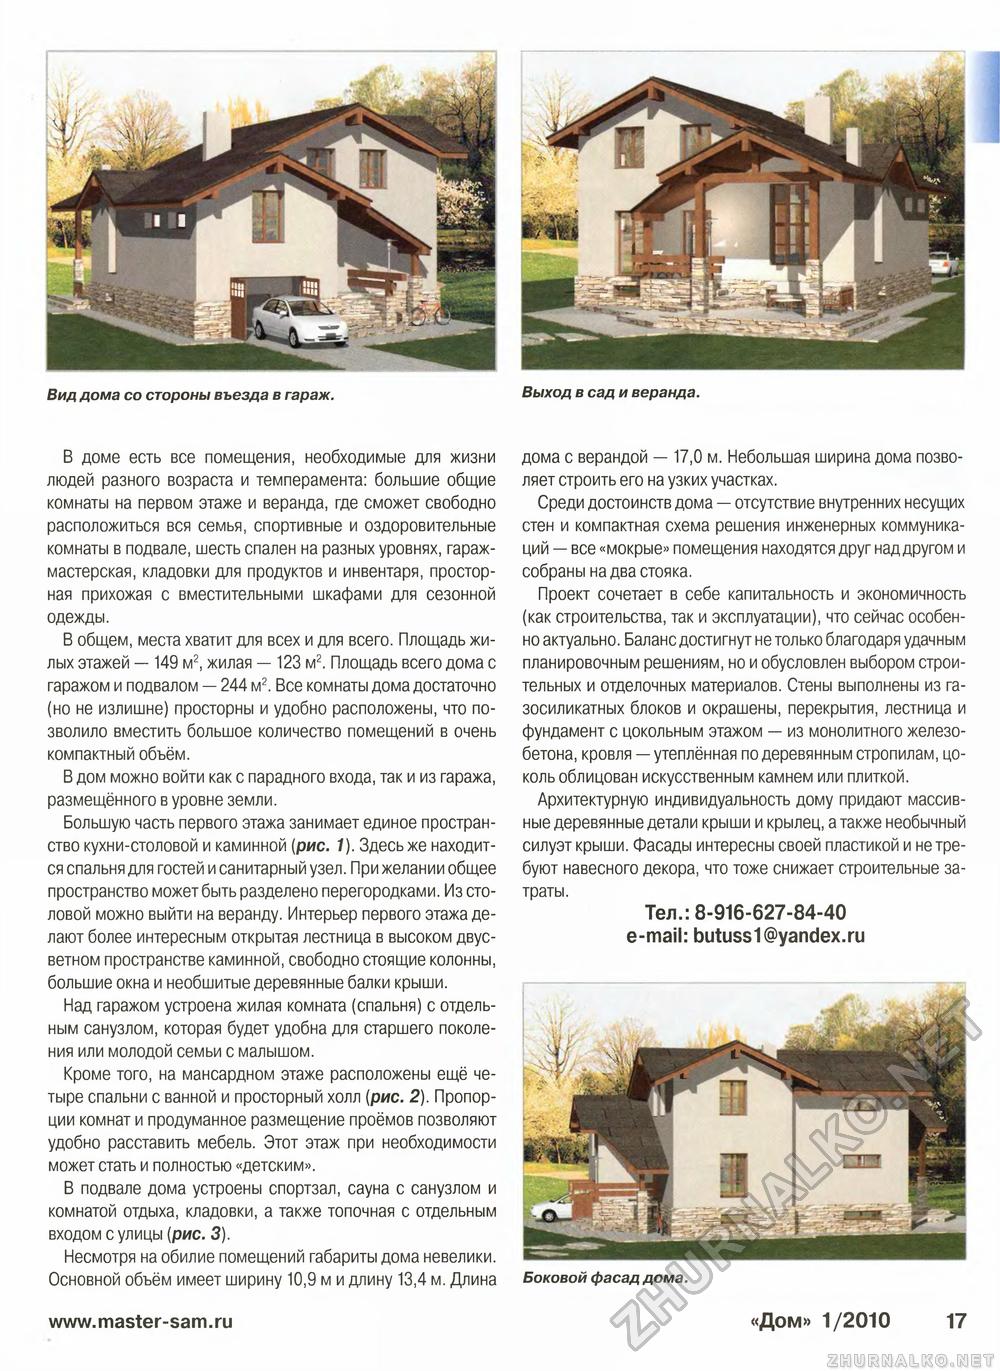 Дом 2010-01, страница 17